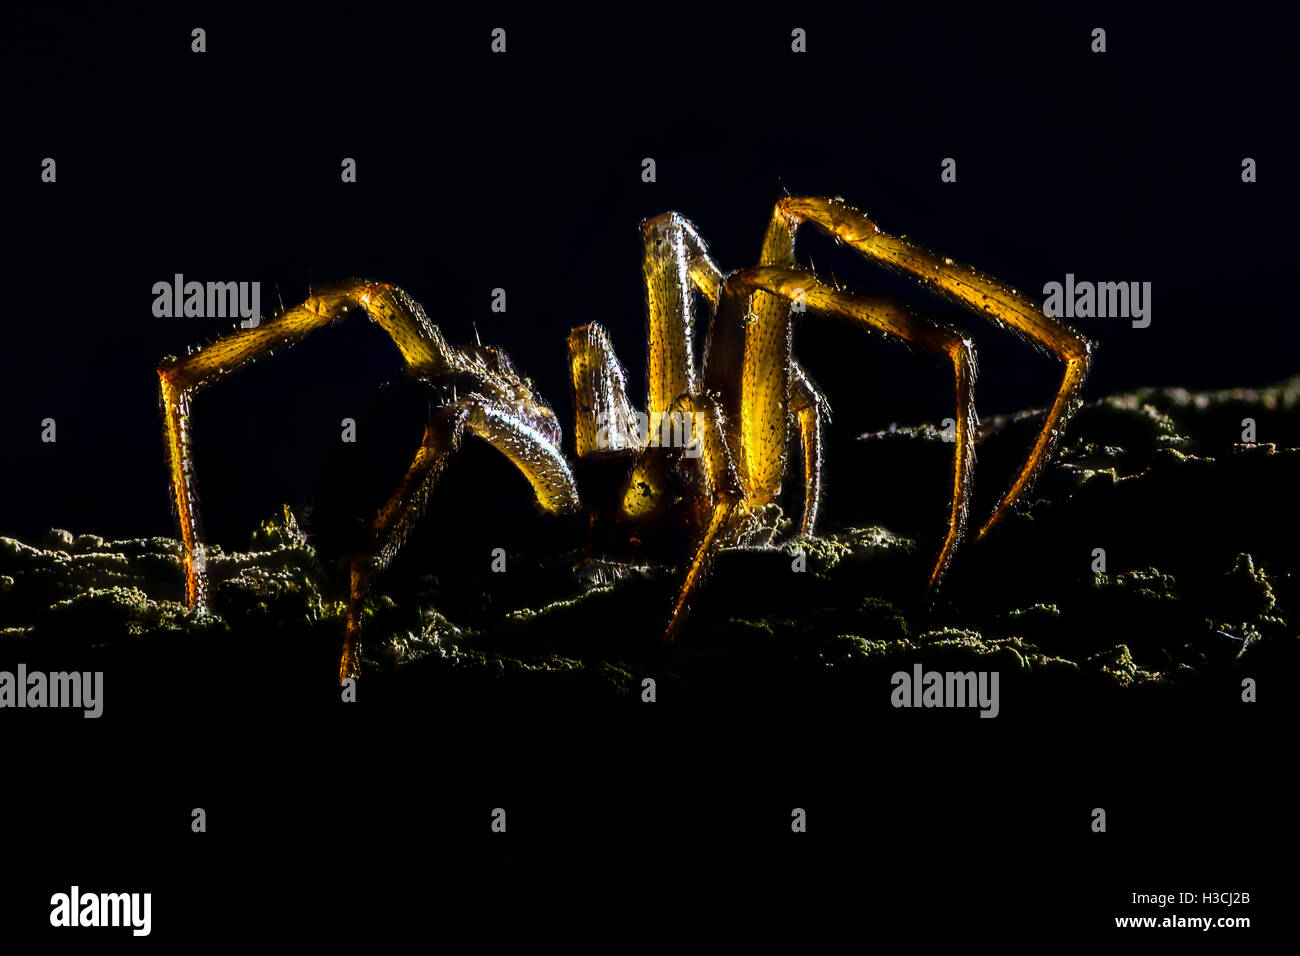 Ampliación extrema - Creepy spider, retroiluminado Foto de stock